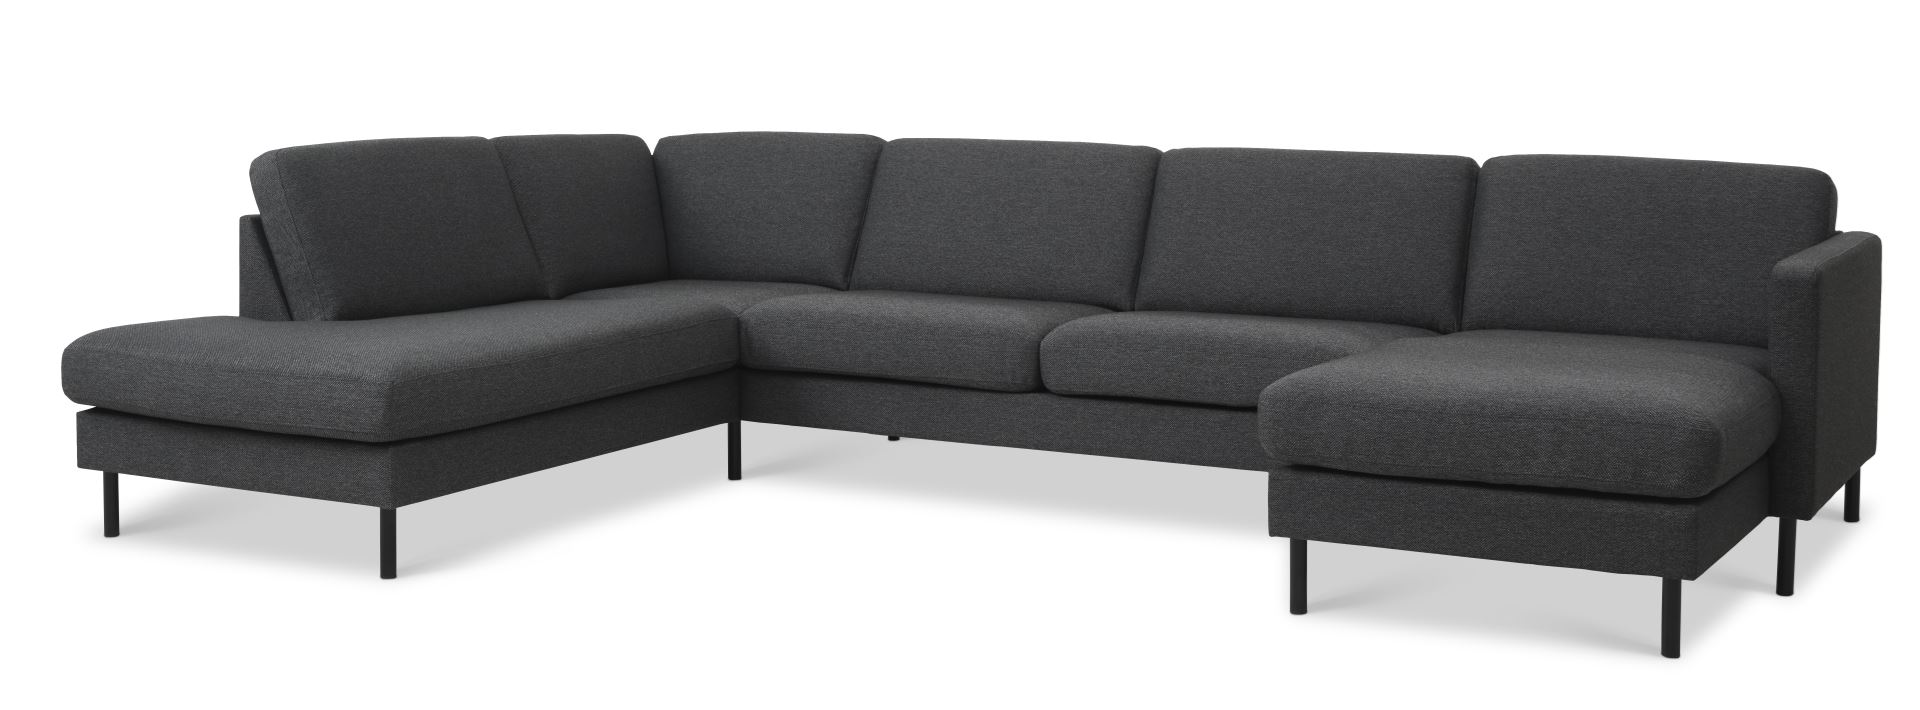 Ask sæt 54 U OE sofa, m. venstre chaiselong - antracitgrå polyester stof og sort metal